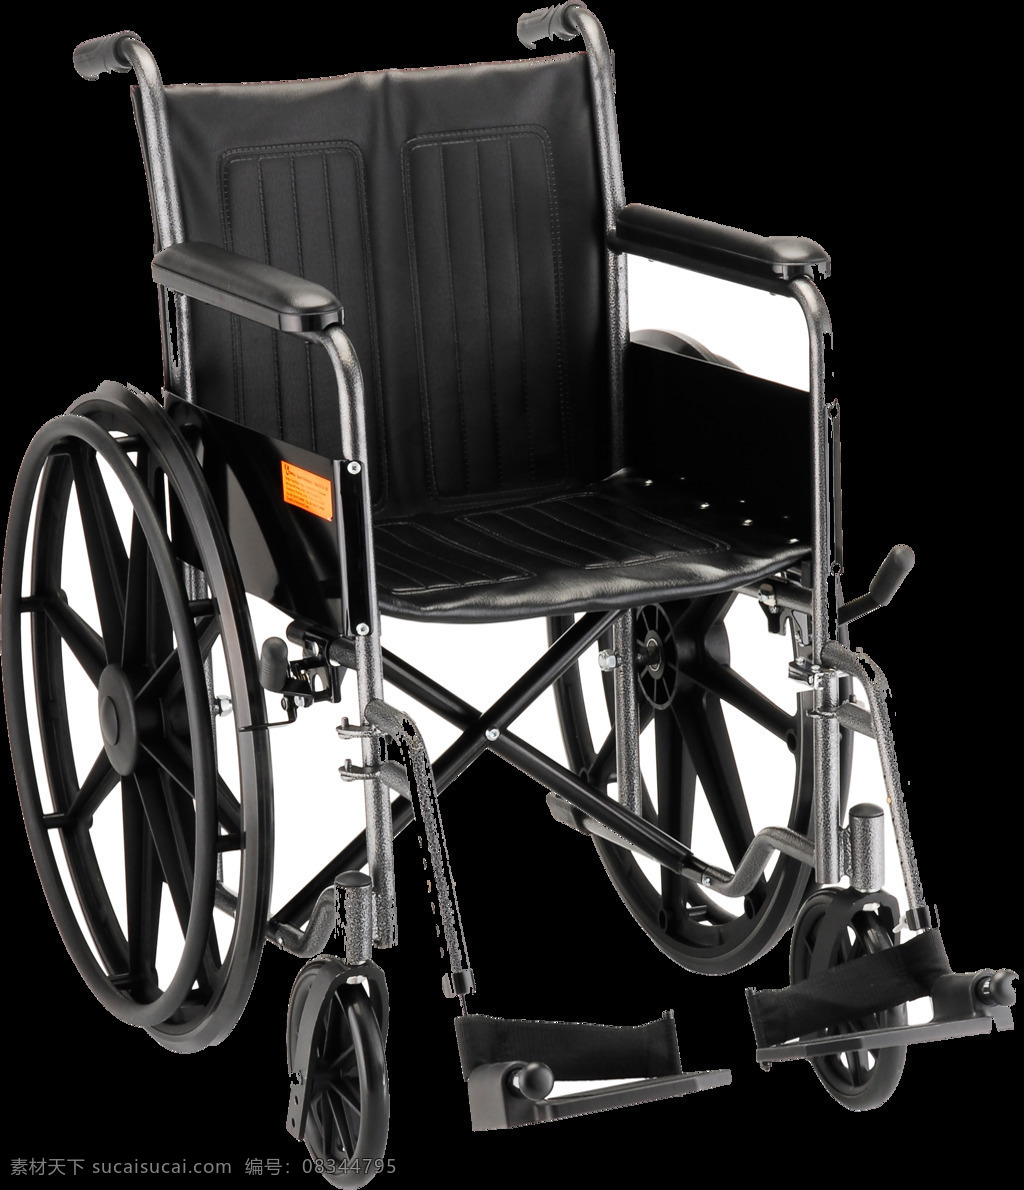 折叠 轮椅 免 抠 透明 图 层 木轮椅 越野轮椅 小轮轮椅 手摇轮椅 轮椅轮子 车载轮椅 老年轮椅 竞速轮椅 轮椅设计 残疾轮椅 折叠轮椅 智能轮椅 医院轮椅 轮椅图片